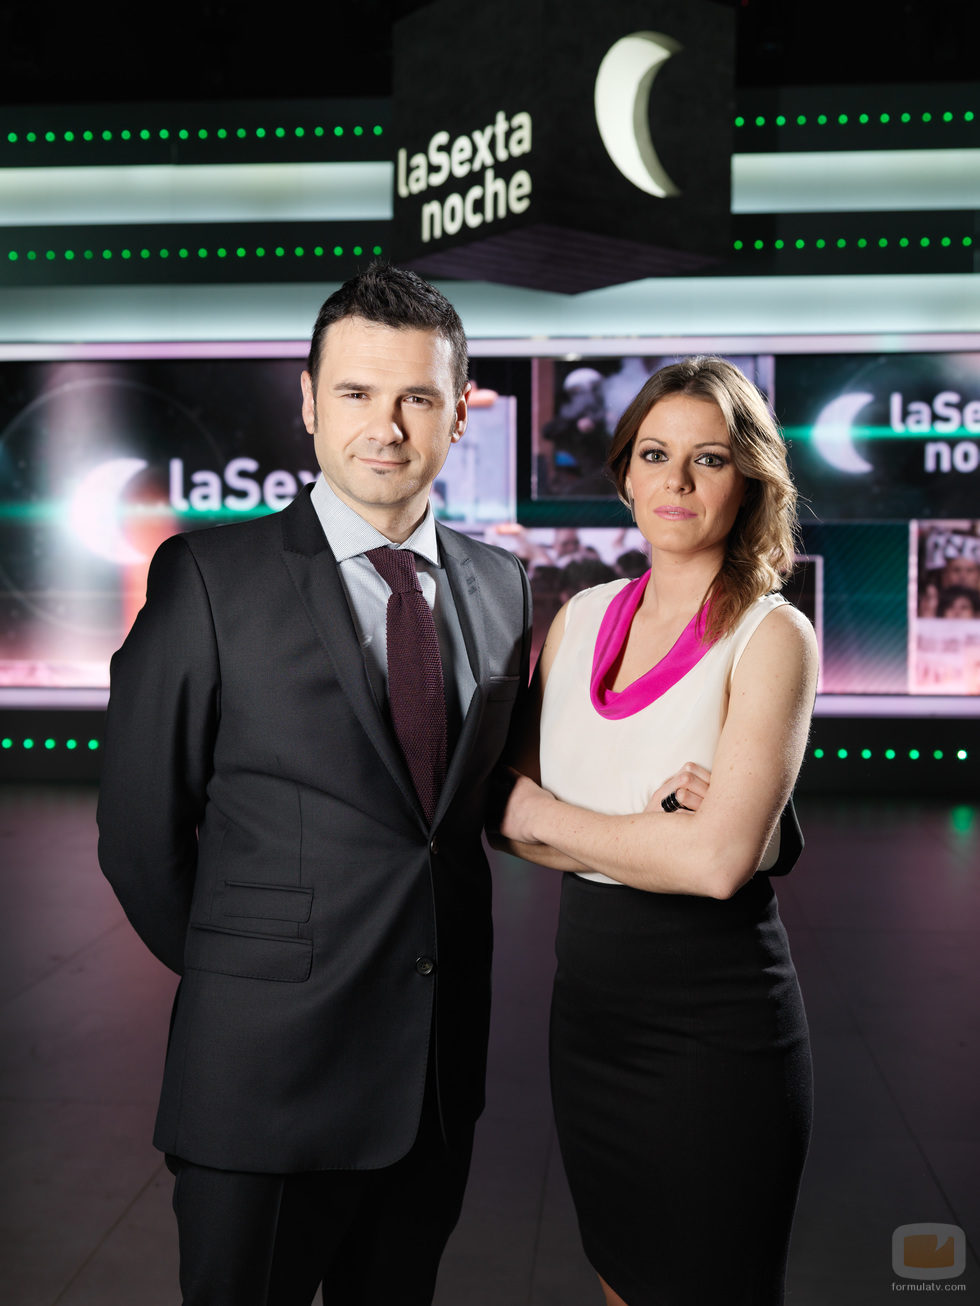 Iñaki Gil y Andrea Ropero, presentadores de 'laSexta noche'